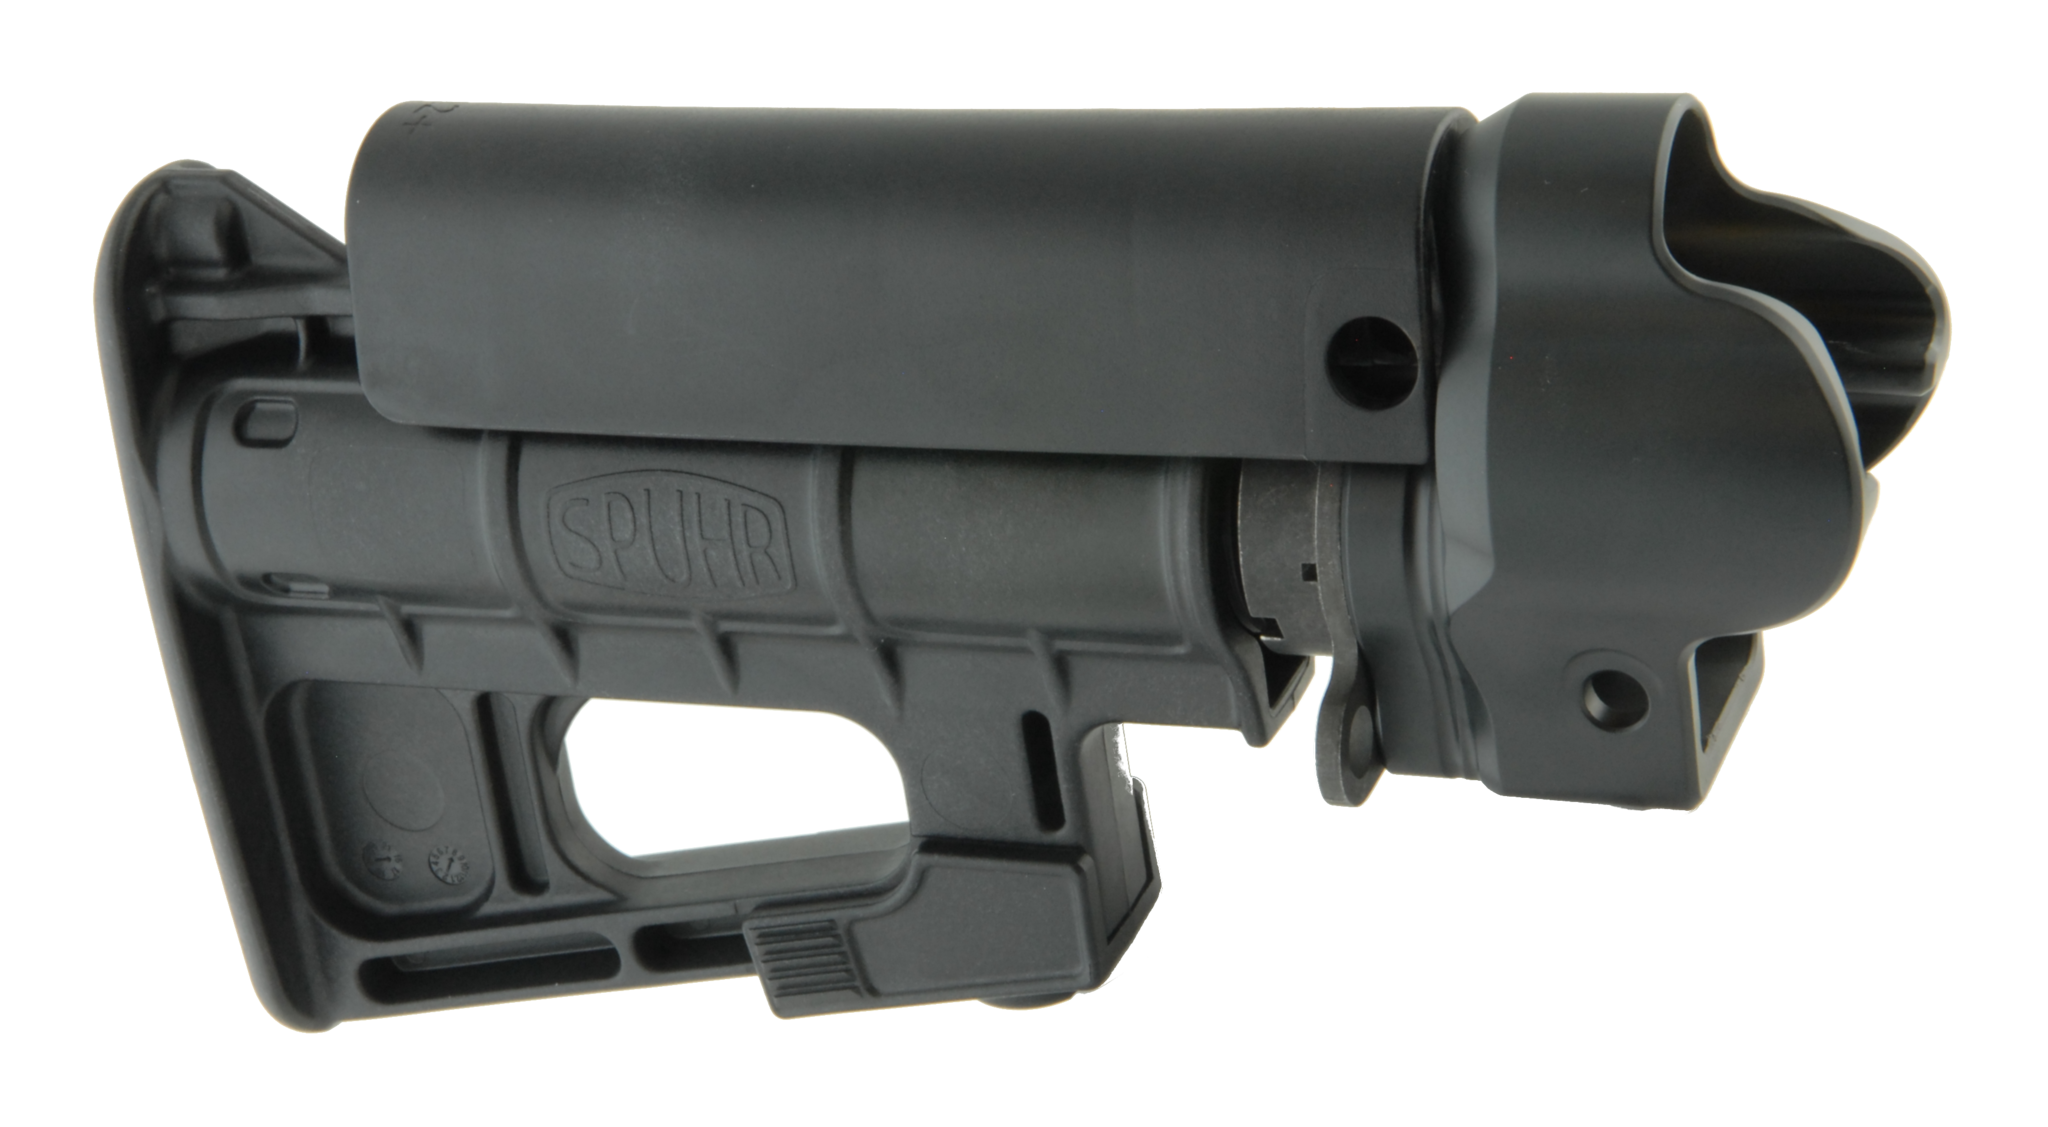 Die Spuhr R-315 MP5 Schulterstütze bringt das bewährte Design der R-410 G3 ...